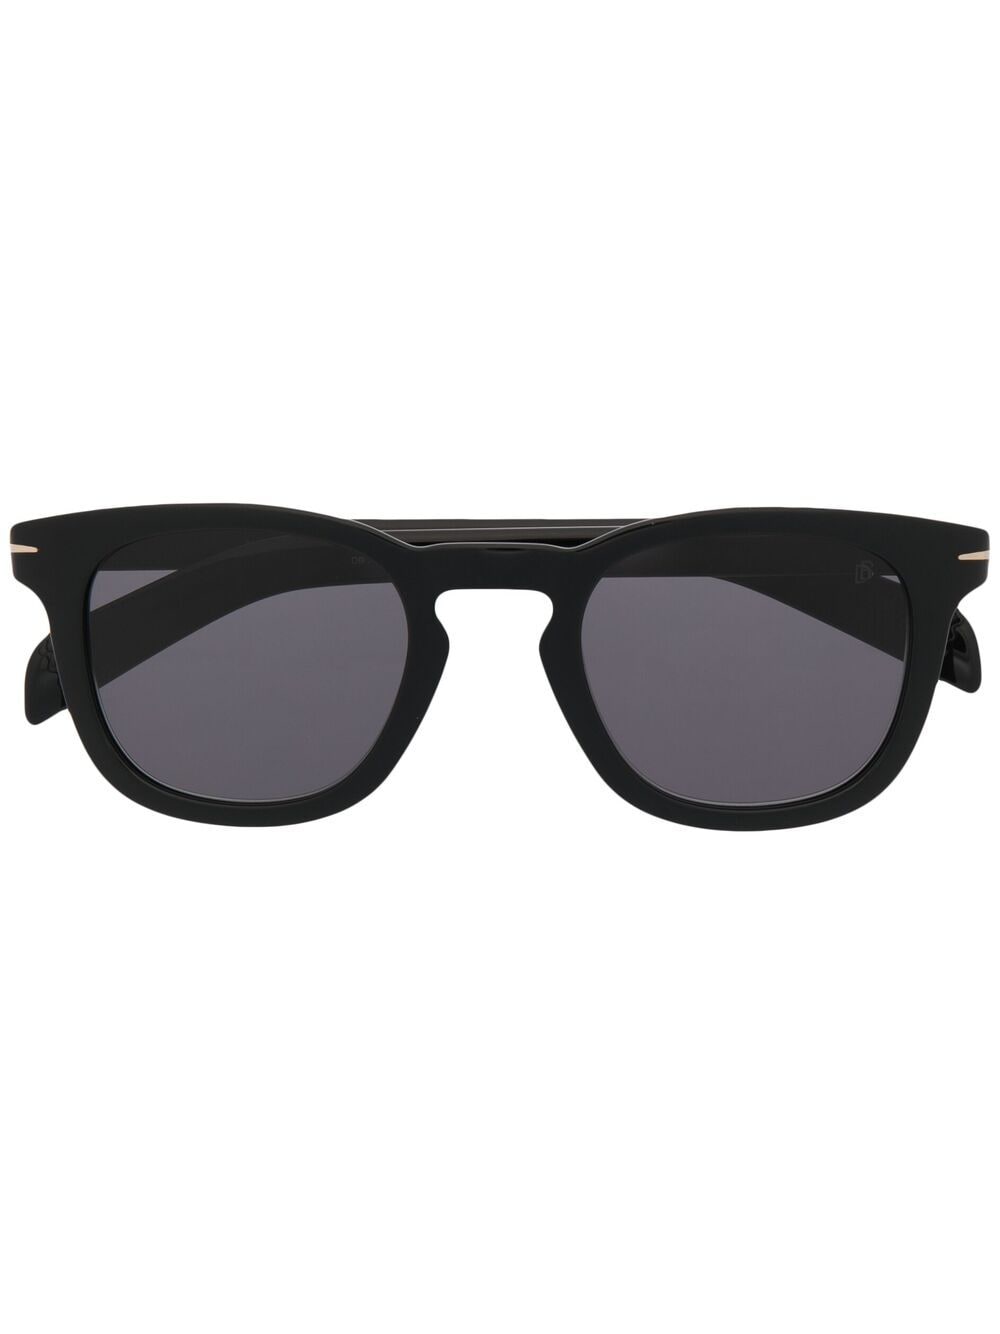 Eyewear by David Beckham cat-eye frame sunglasses - Black von Eyewear by David Beckham